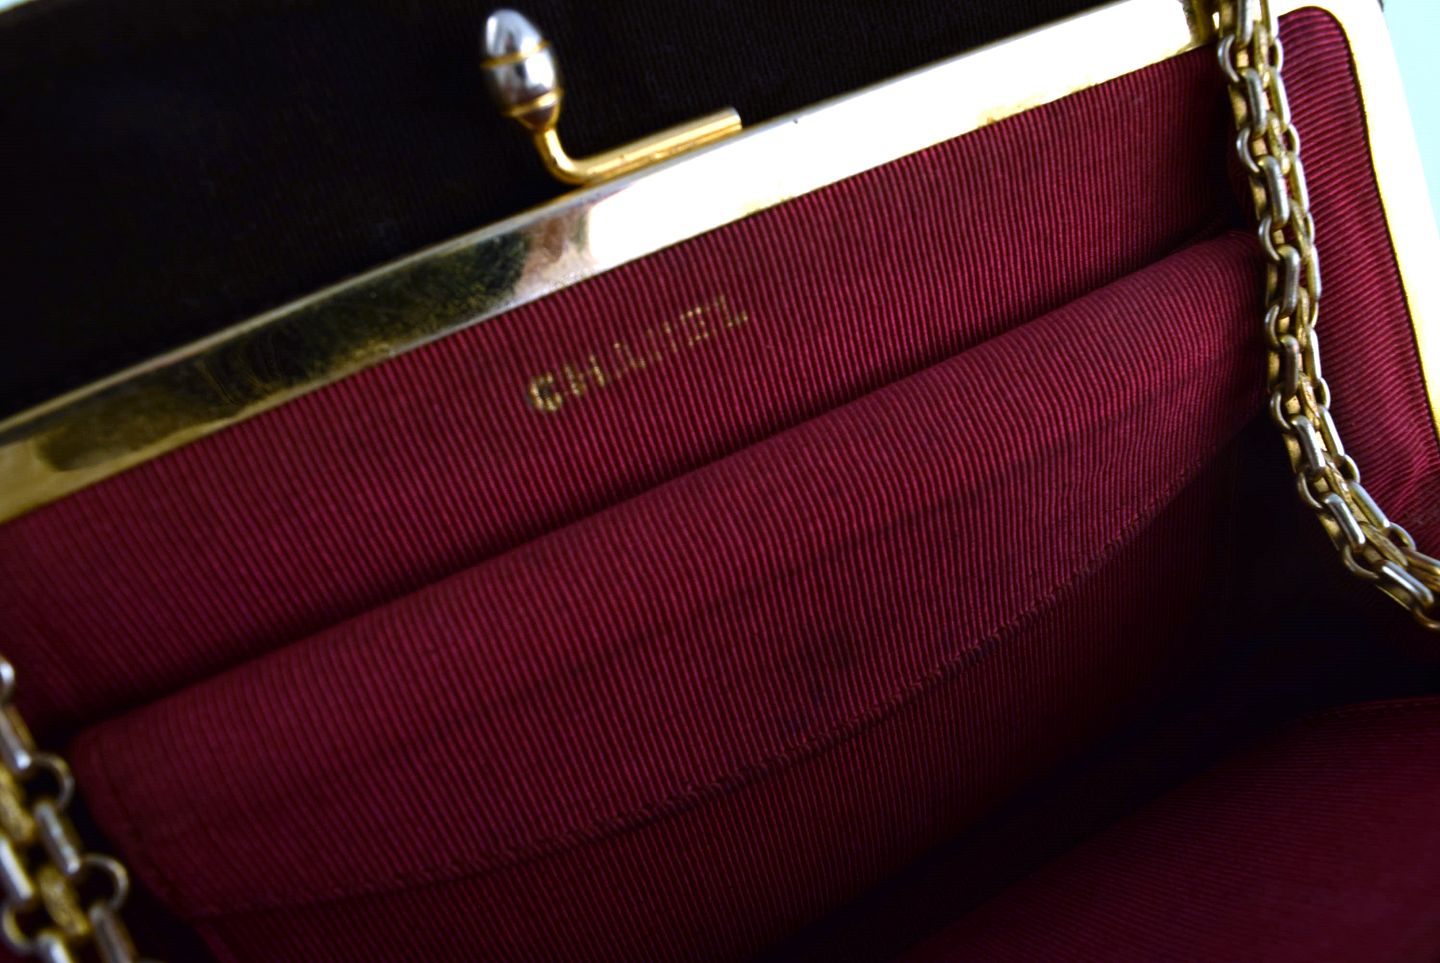 L Art - Vintage Chanel bag in brown velvet. Interior red velvet. Pat